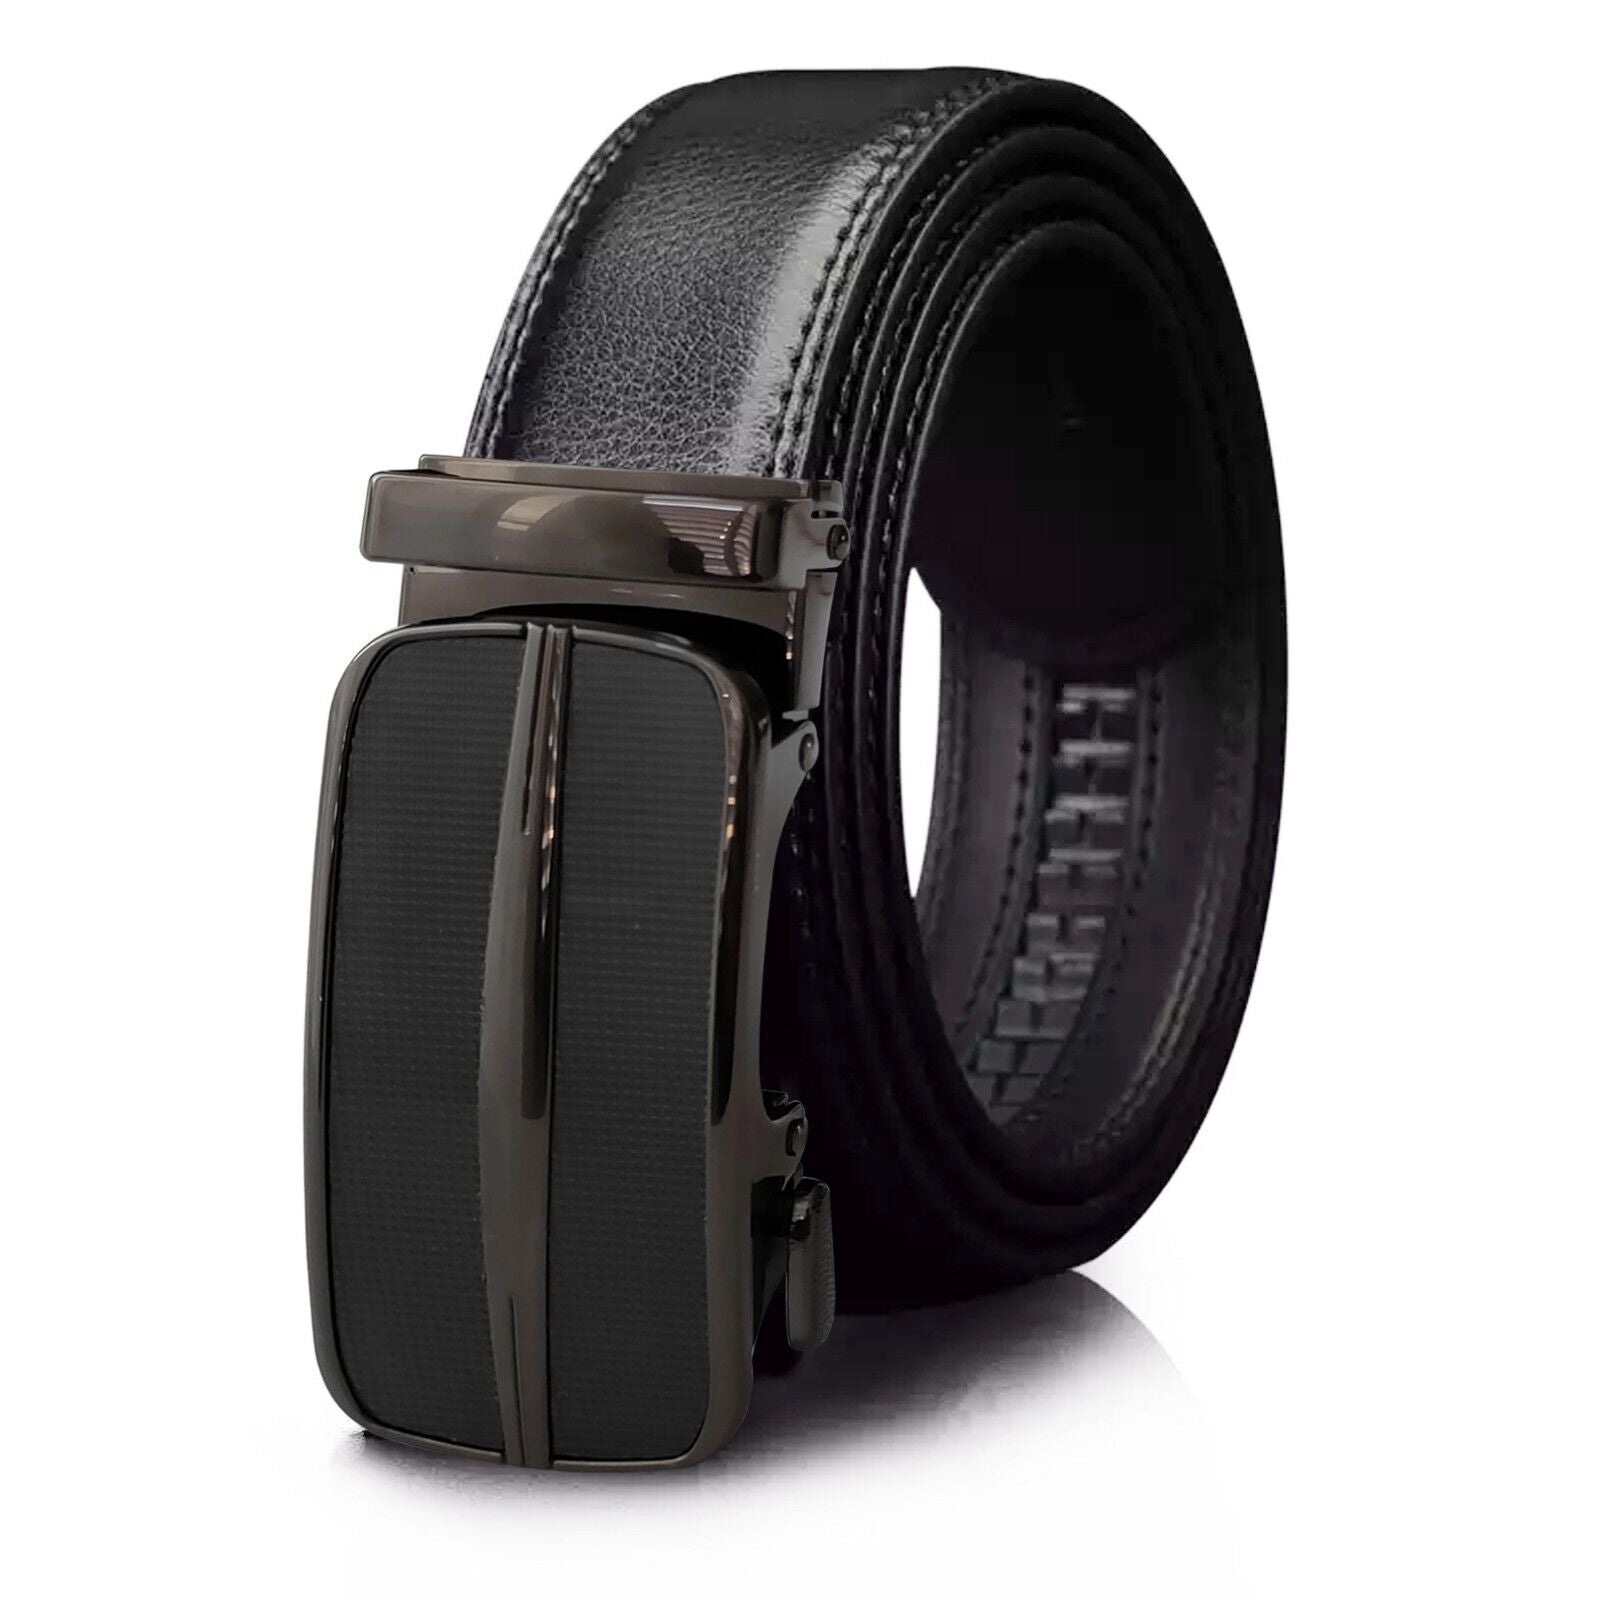 Men's Ratchet Belt Leather Mens Belt With Slide Buckle Ratchet Belts For Men USA - AFFORDABLE MARKET